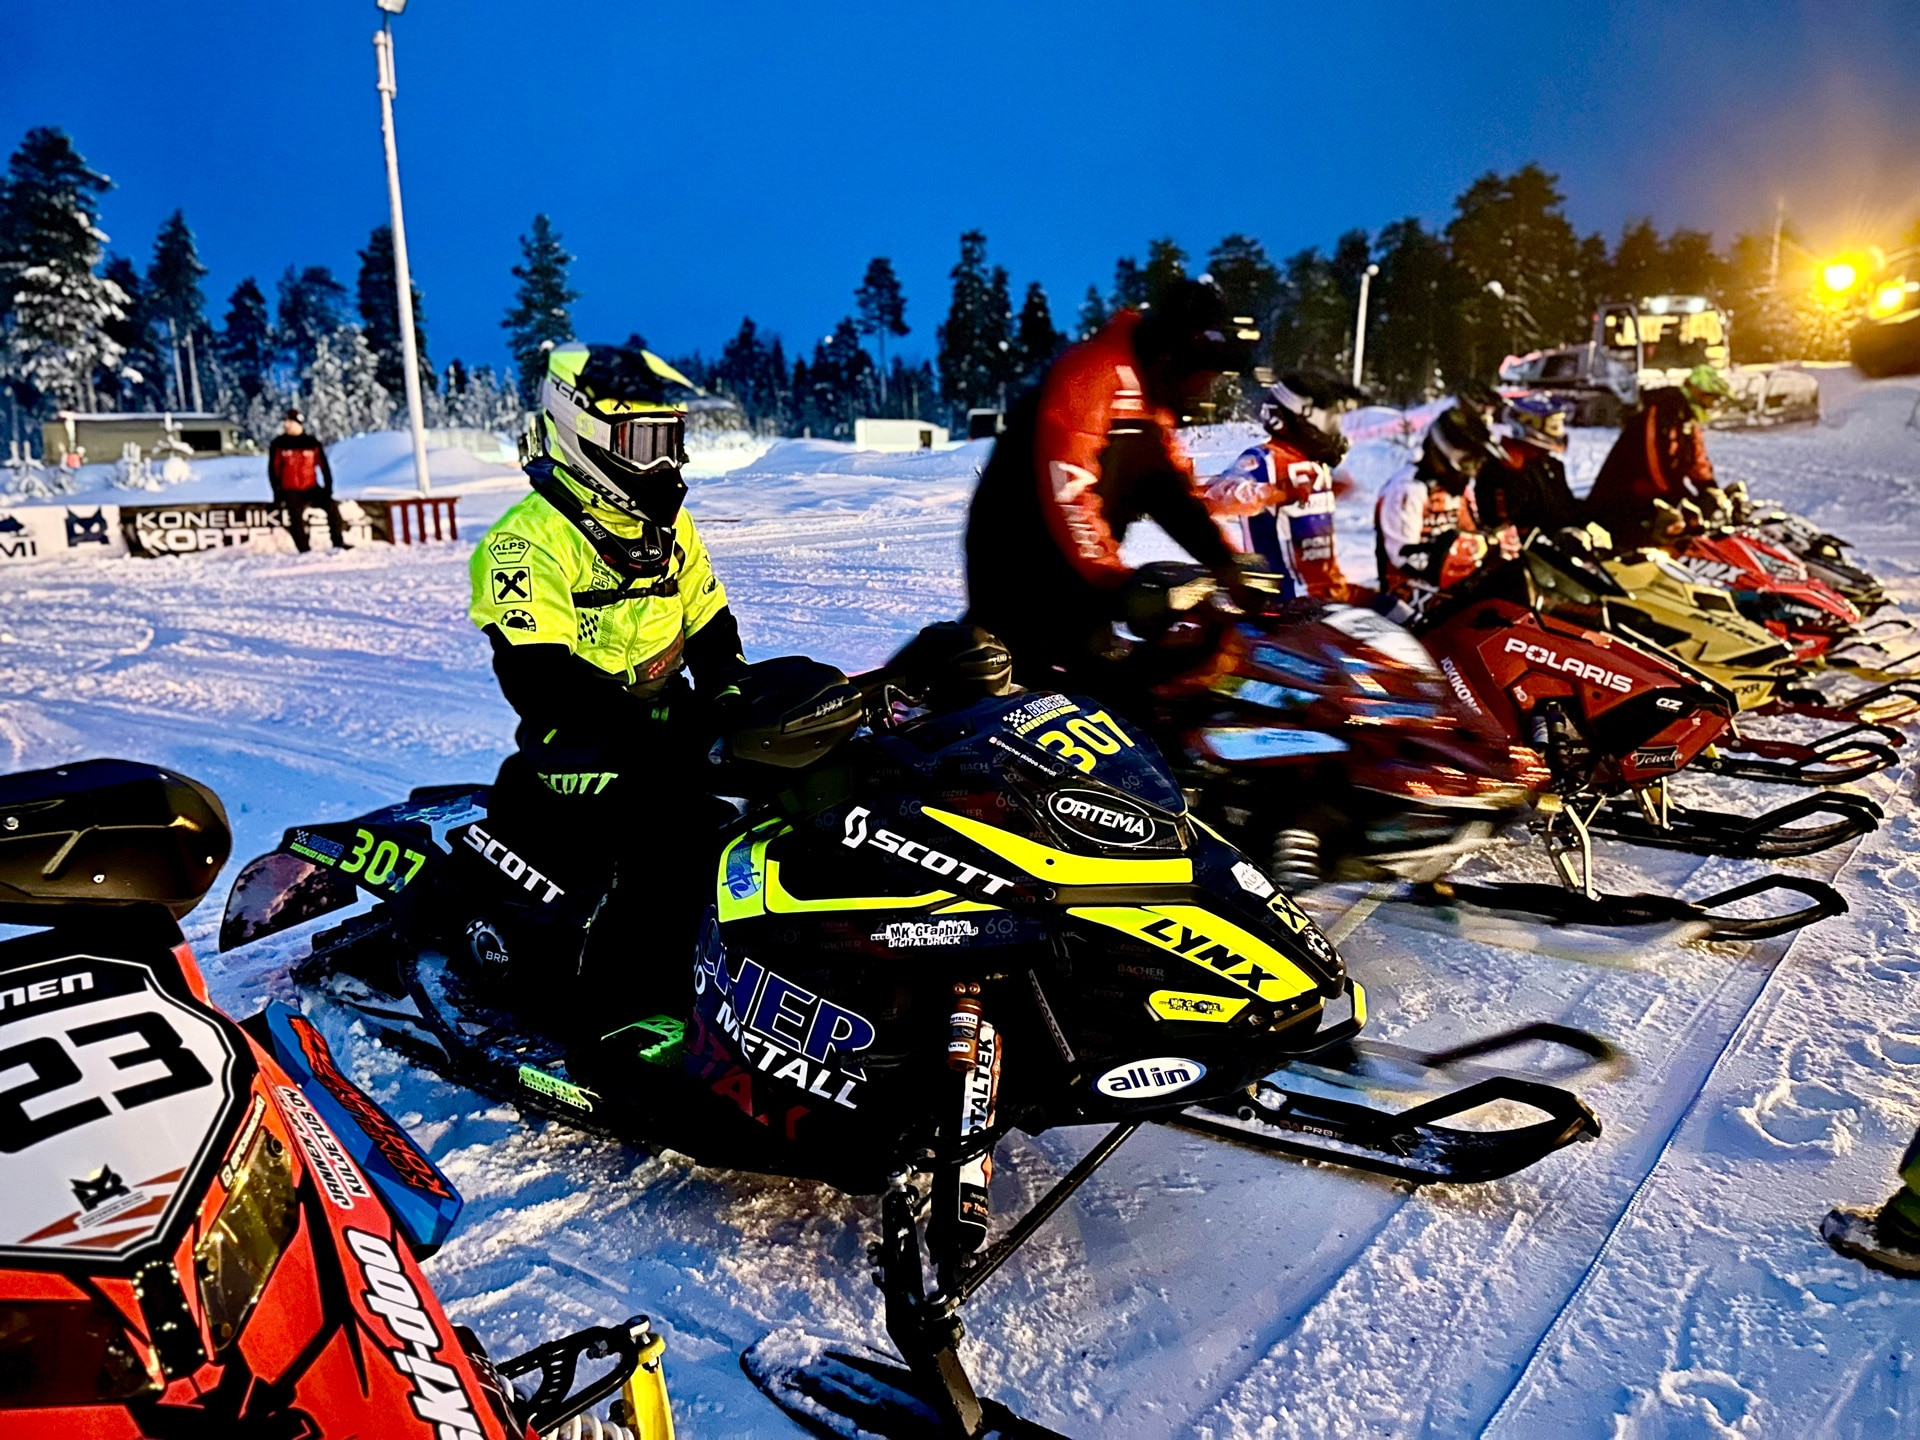 Snowcross sporcusu Elias Bacher Finlandiya'da sezona güçlü bir başlangıç yaptı!